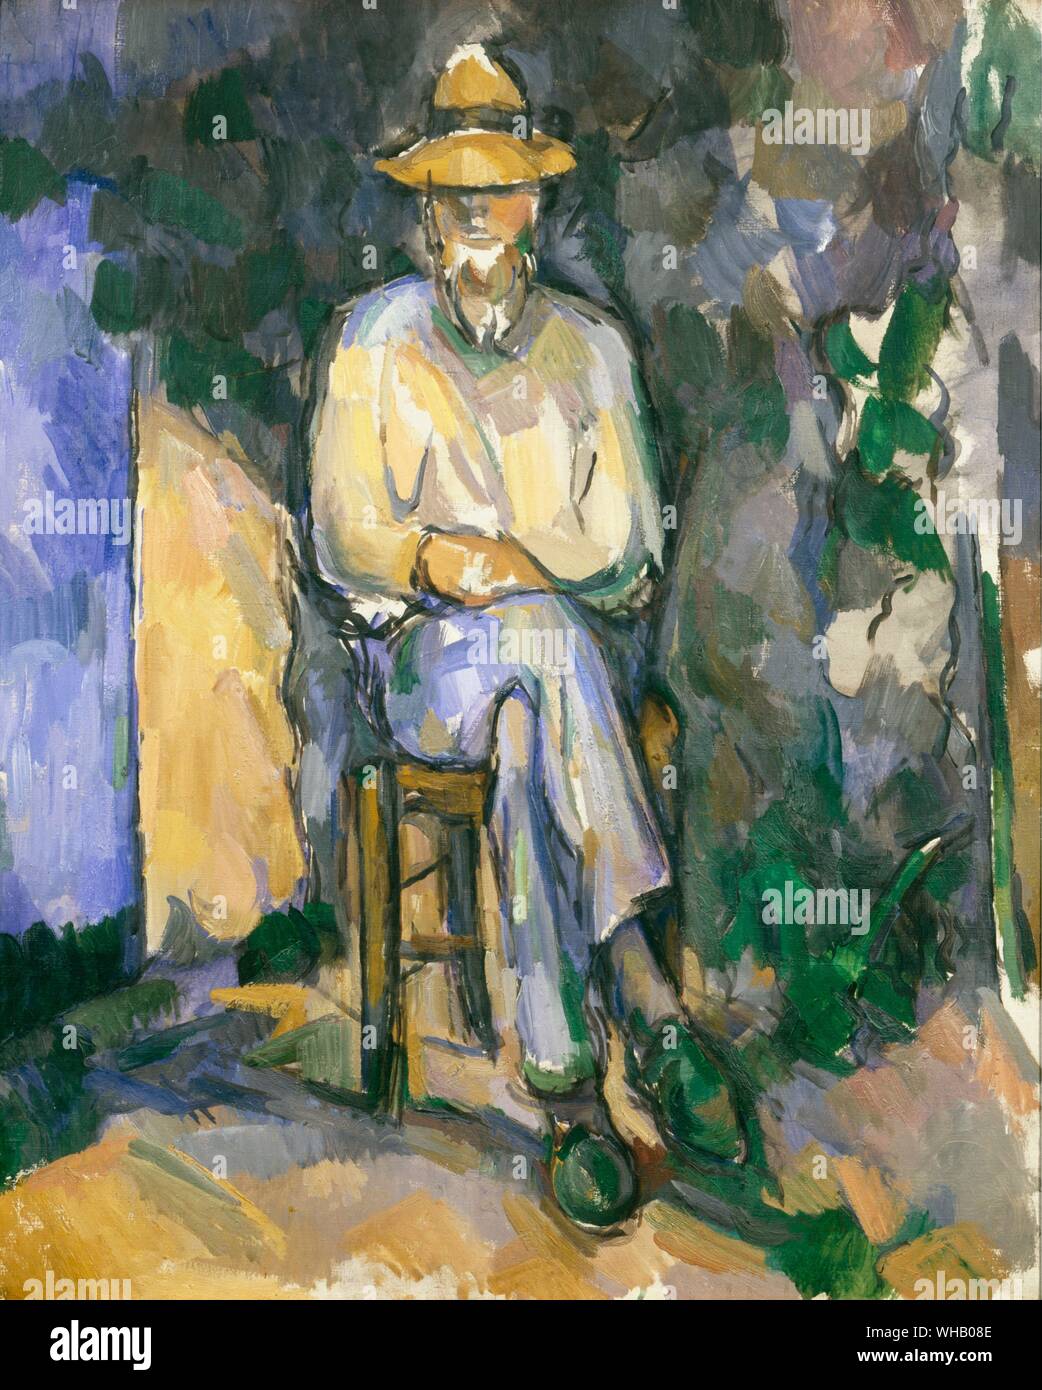 Le Jardinier. par Cézanne. Paul Cézanne (19 janvier 1839 - 22 octobre 1906) était un artiste français, peintre (Postimpressionist) dont le travail a jeté les bases de la transition de la 19e siècle conception de l'activité artistique dans une nouvelle et radicalement différente monde de l'art dans le 20ème. Cézanne a formé le pont entre l'Impressionnisme de la fin du xixe siècle et le début du 20e siècle, le Cubisme. . . Banque D'Images